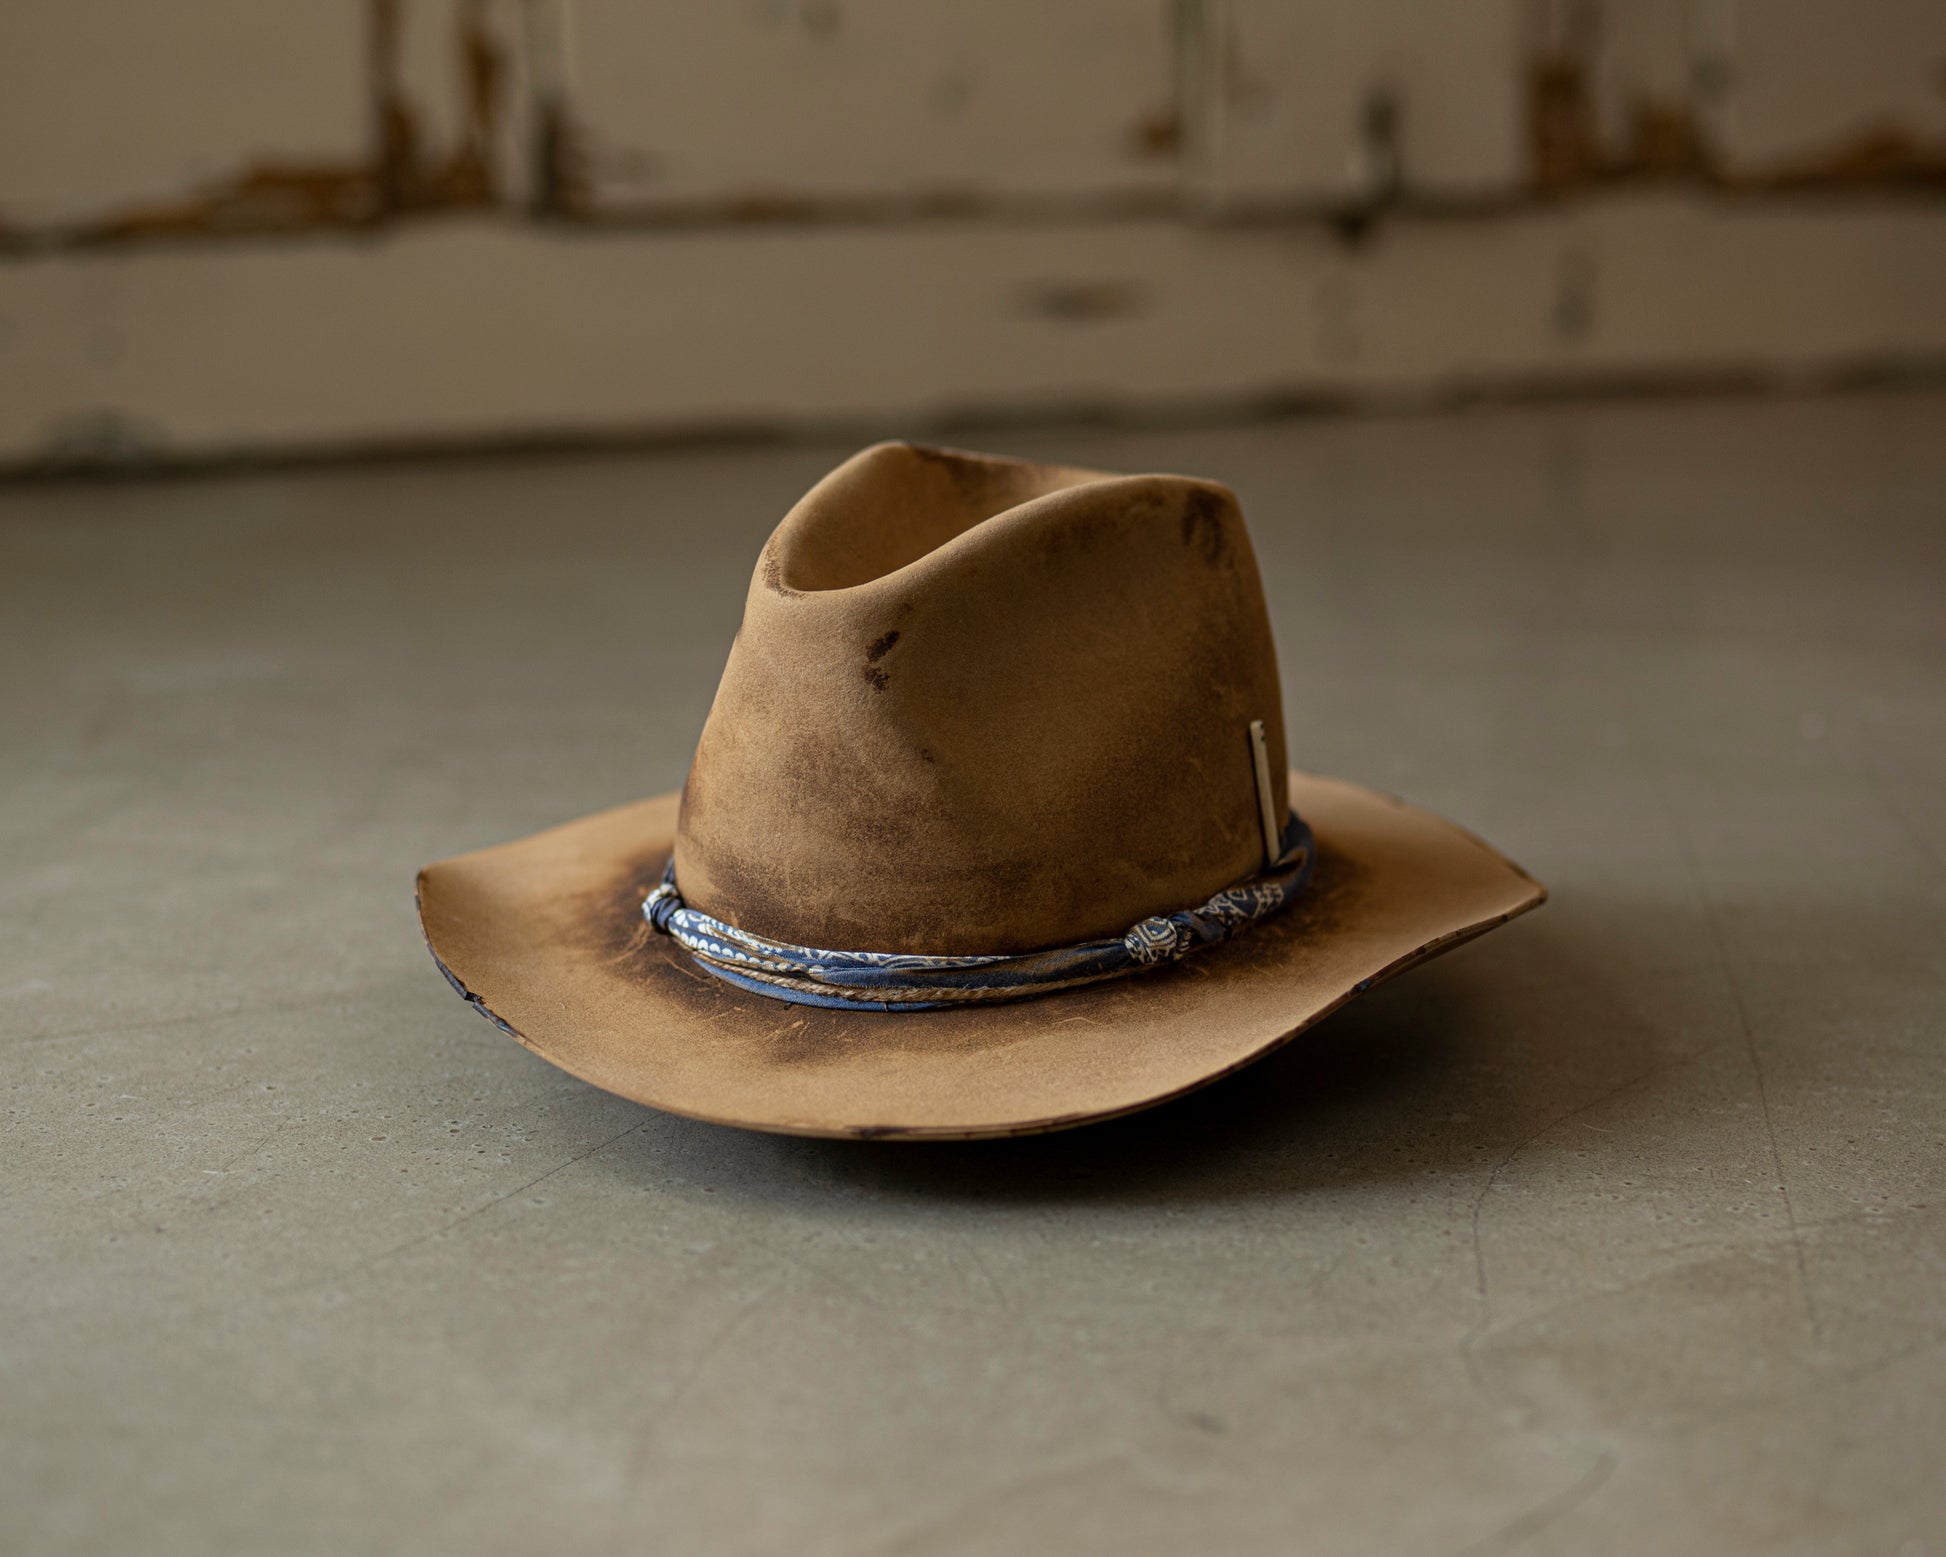 STETSON COWBOY HAT WITH ORIGINAL BOX - CAMEL COLOR - SIZE 6-7/8